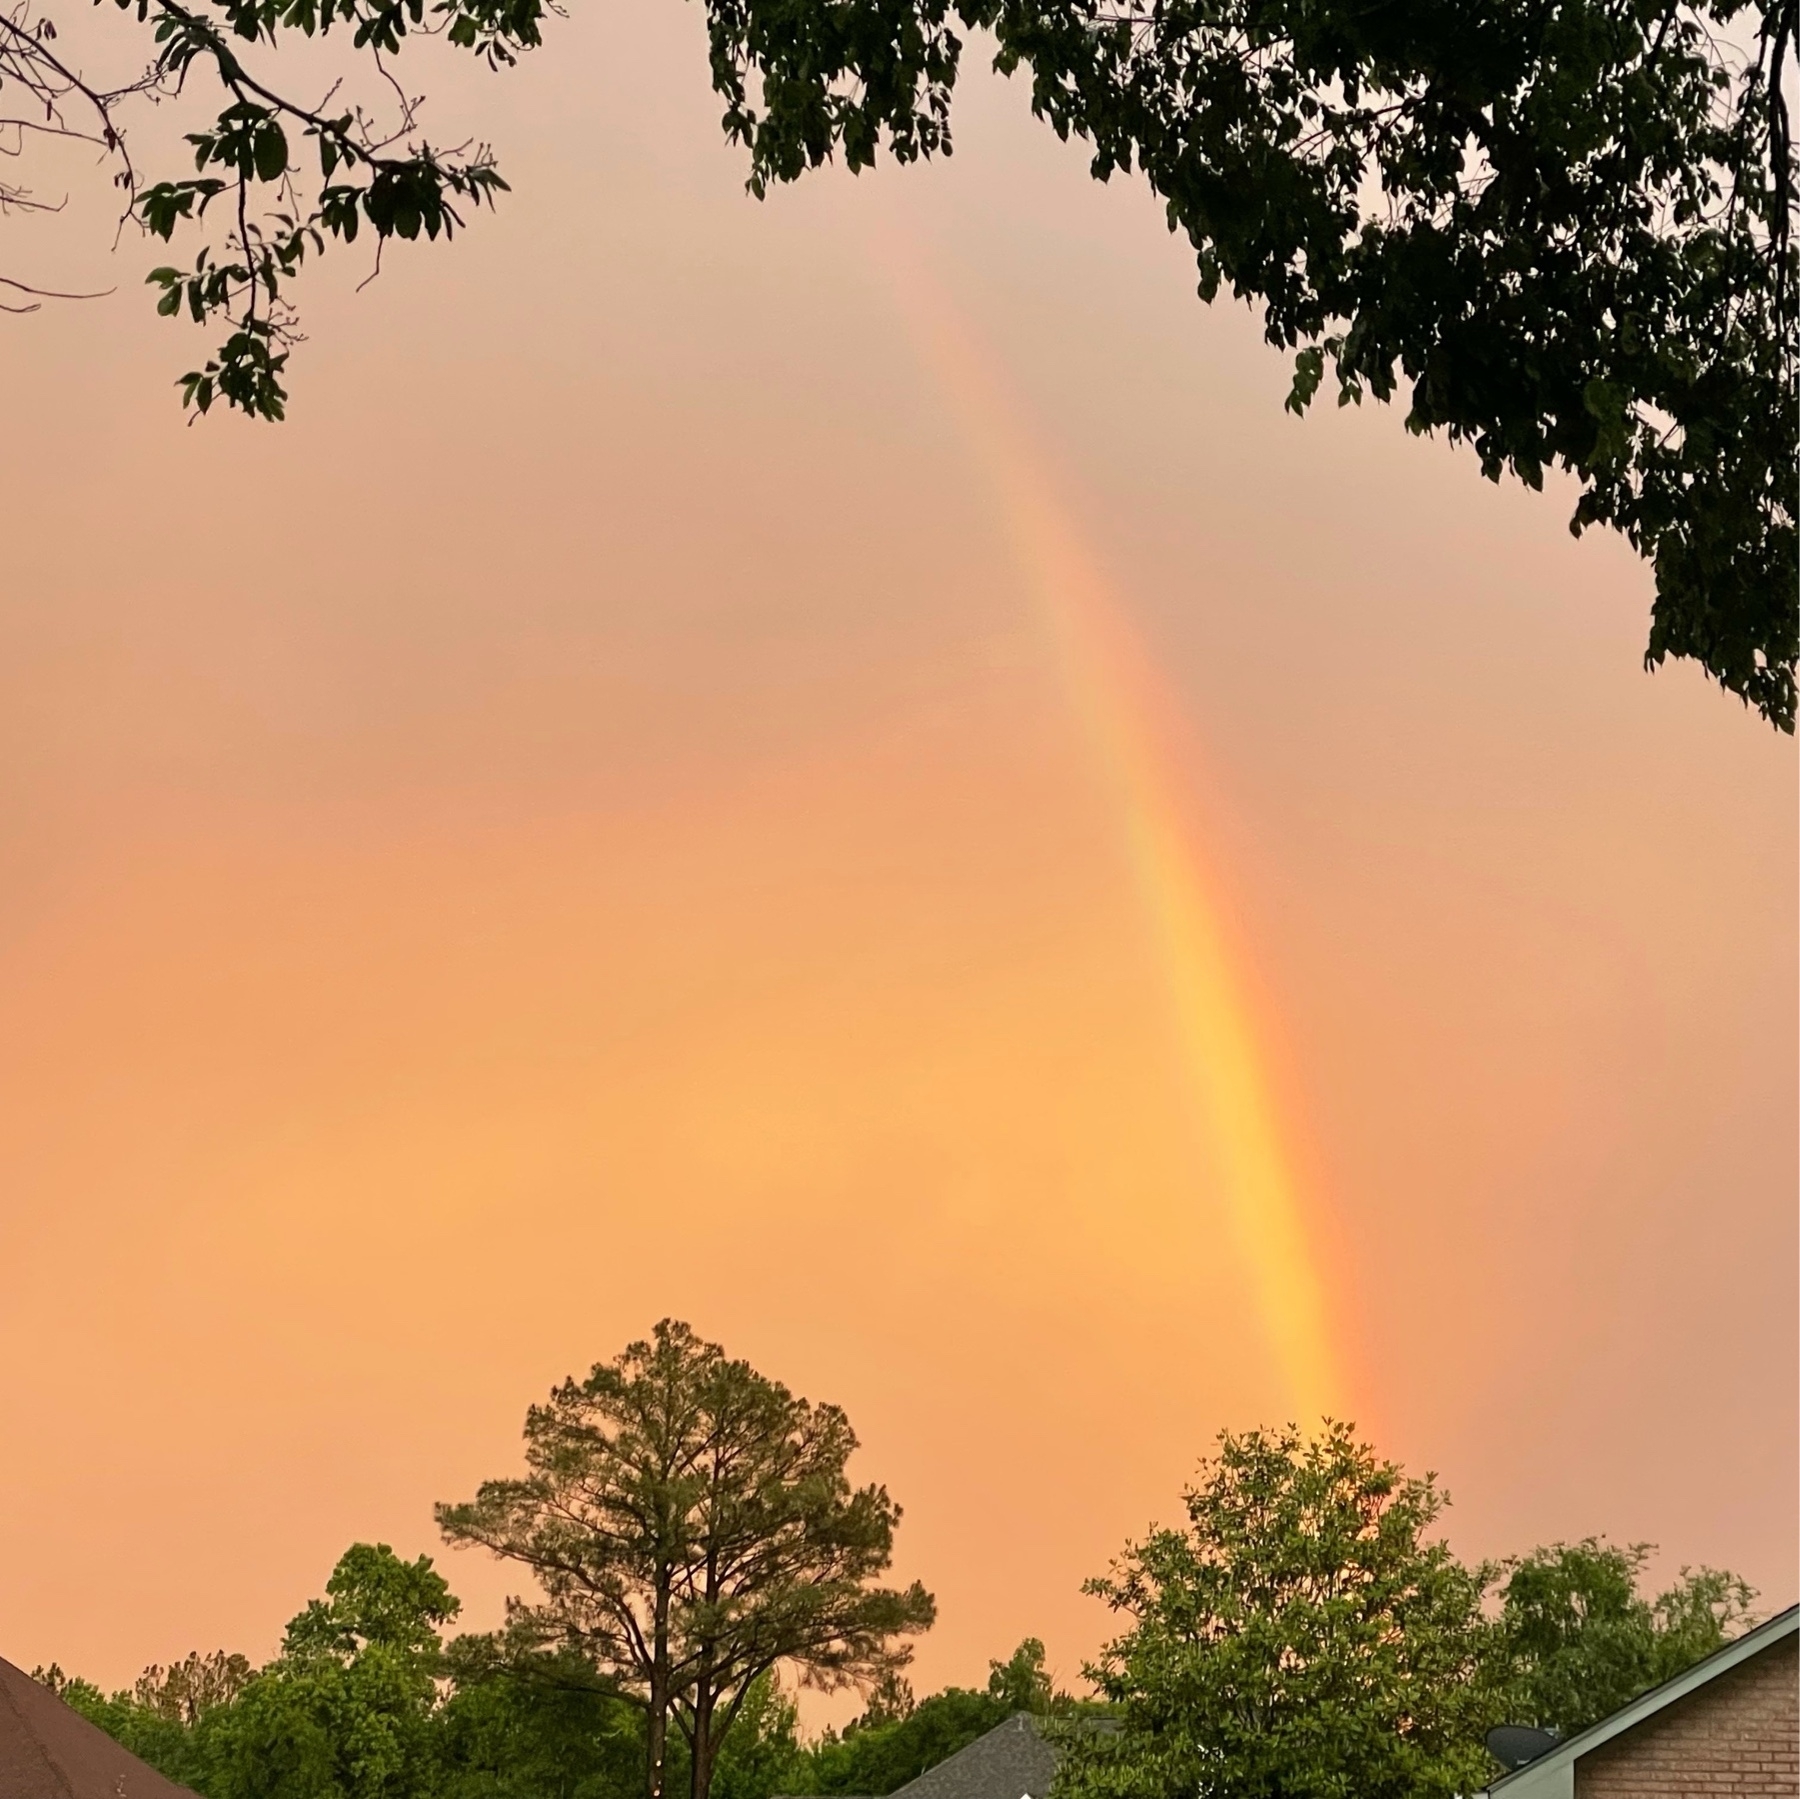 Rainbow against orange sky